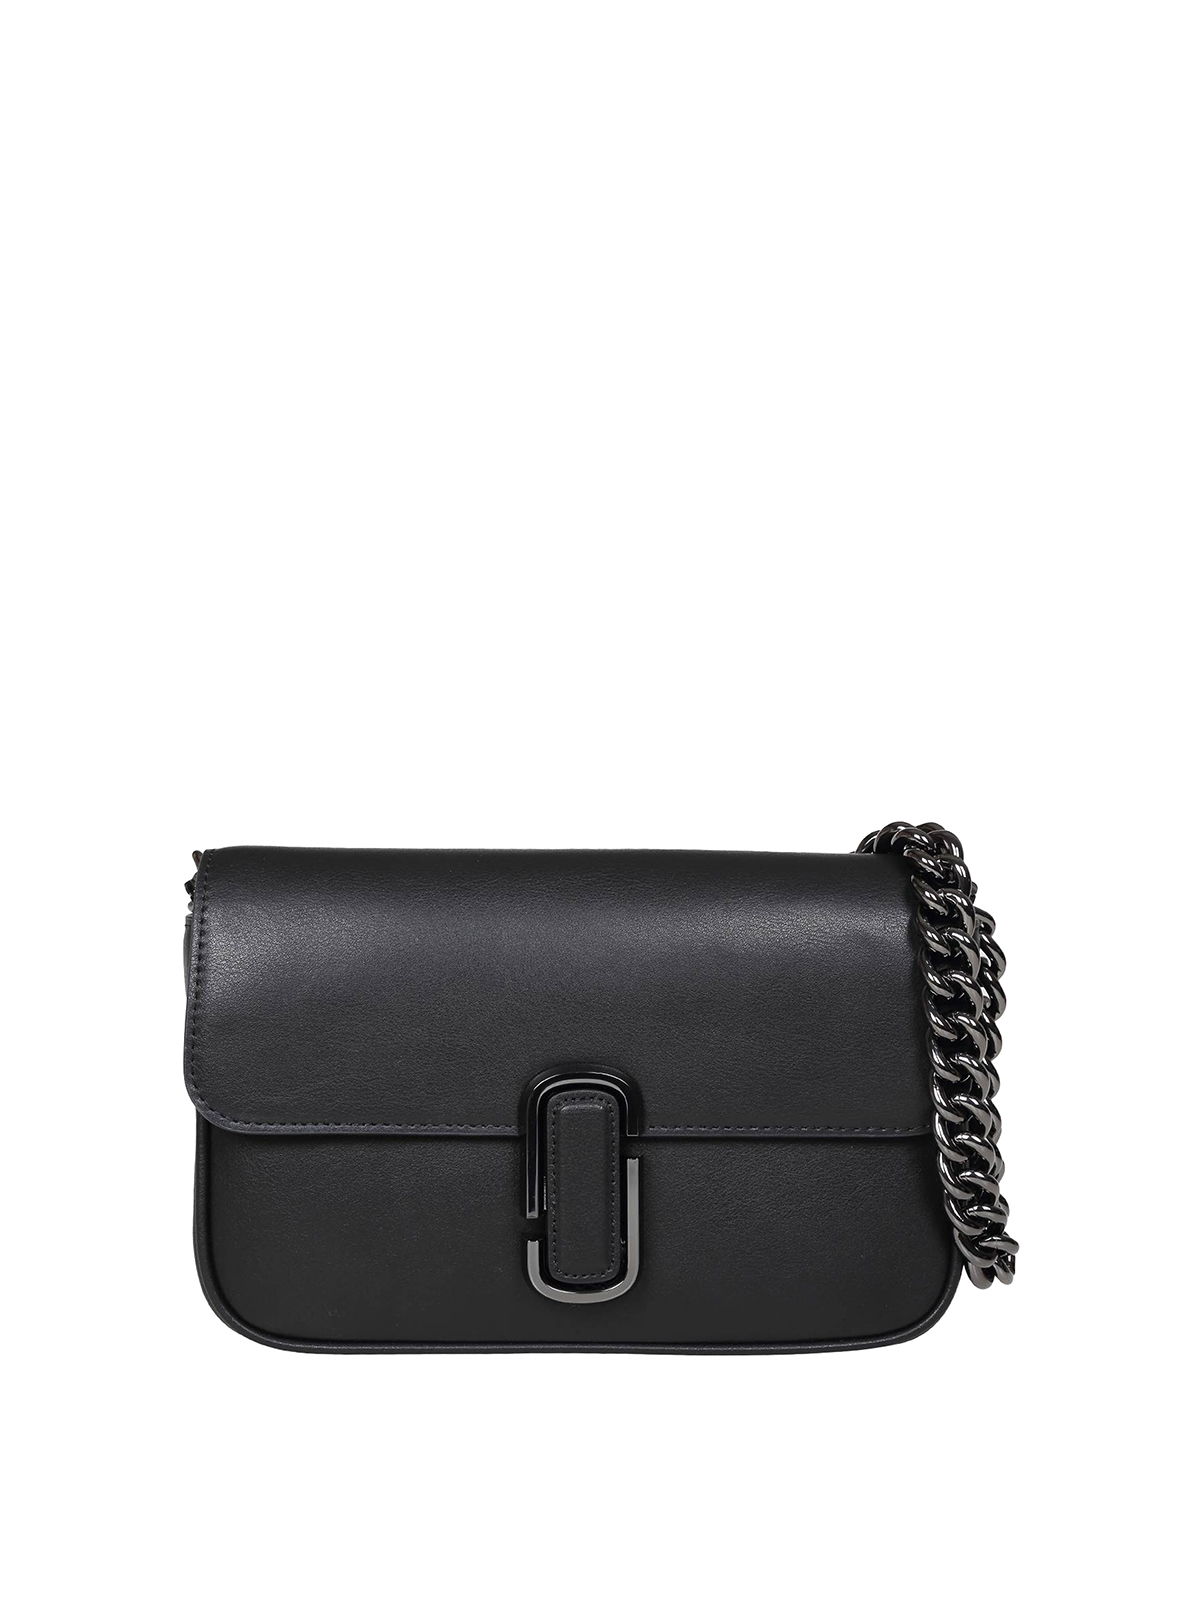 Marc Jacobs Leather Shoulder Bag In Black